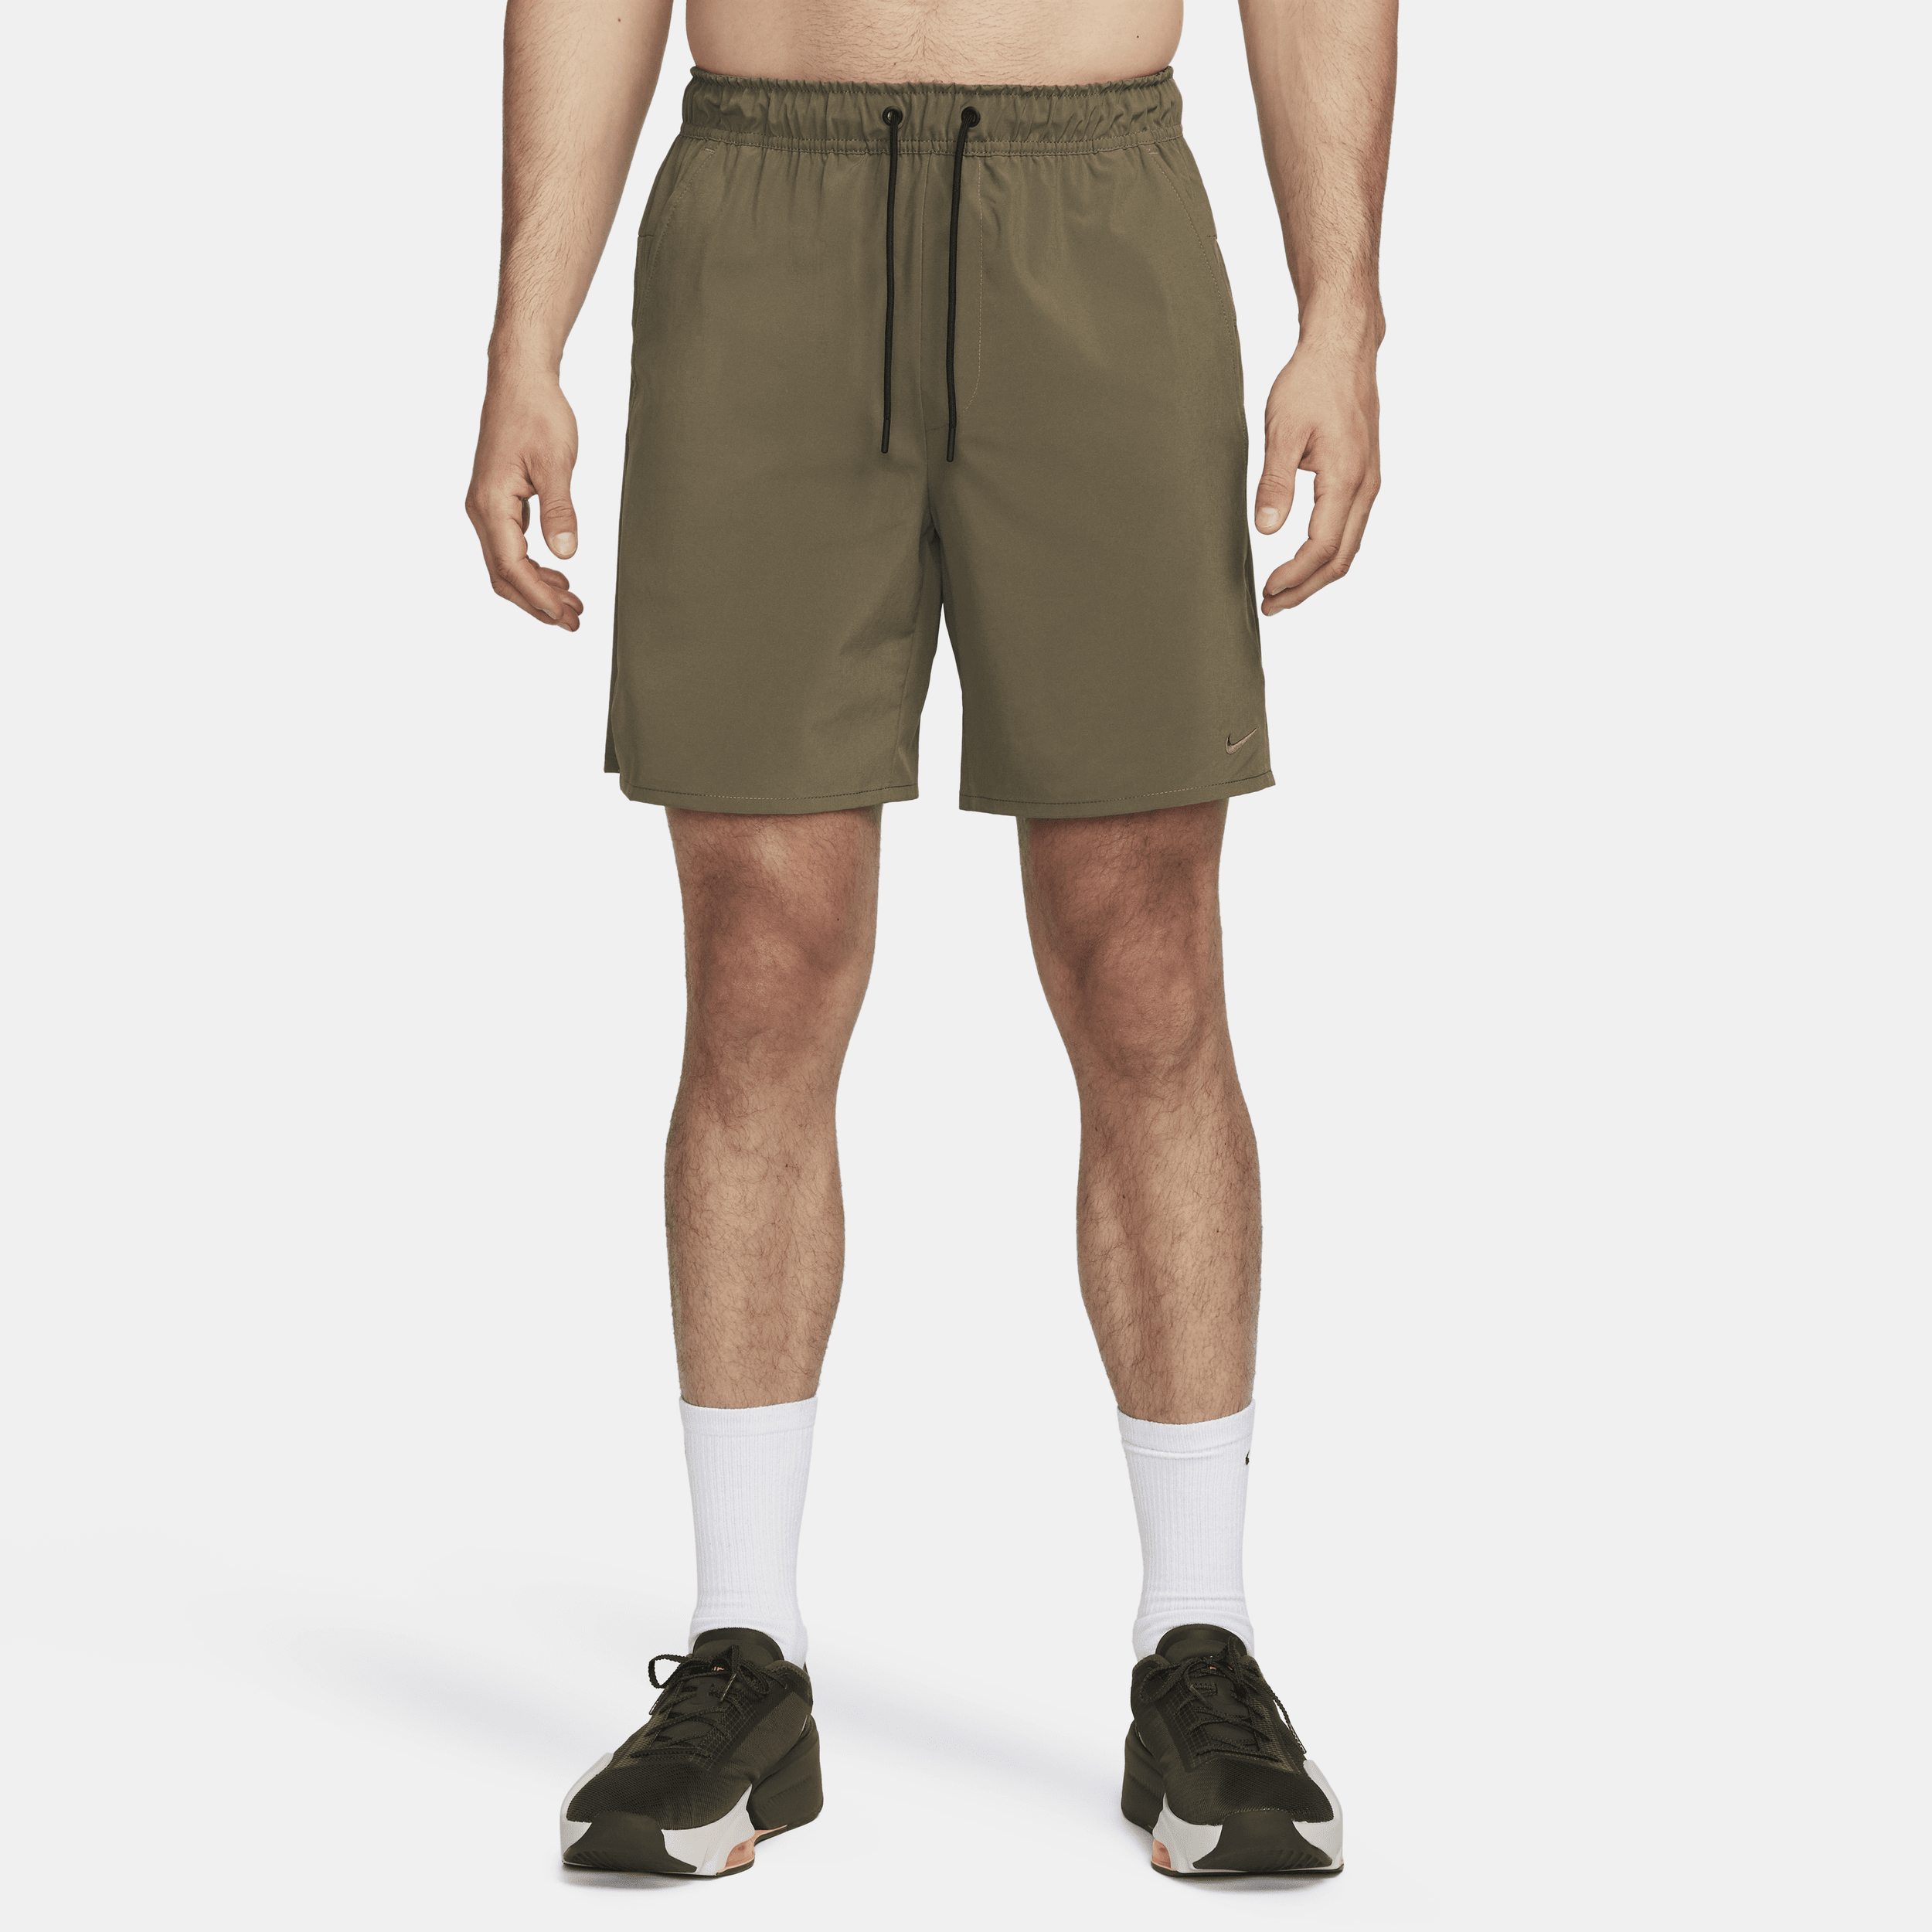 Alsidige Nike Unlimited-Dri-FIT-shorts (18 cm) uden for til mænd - grøn